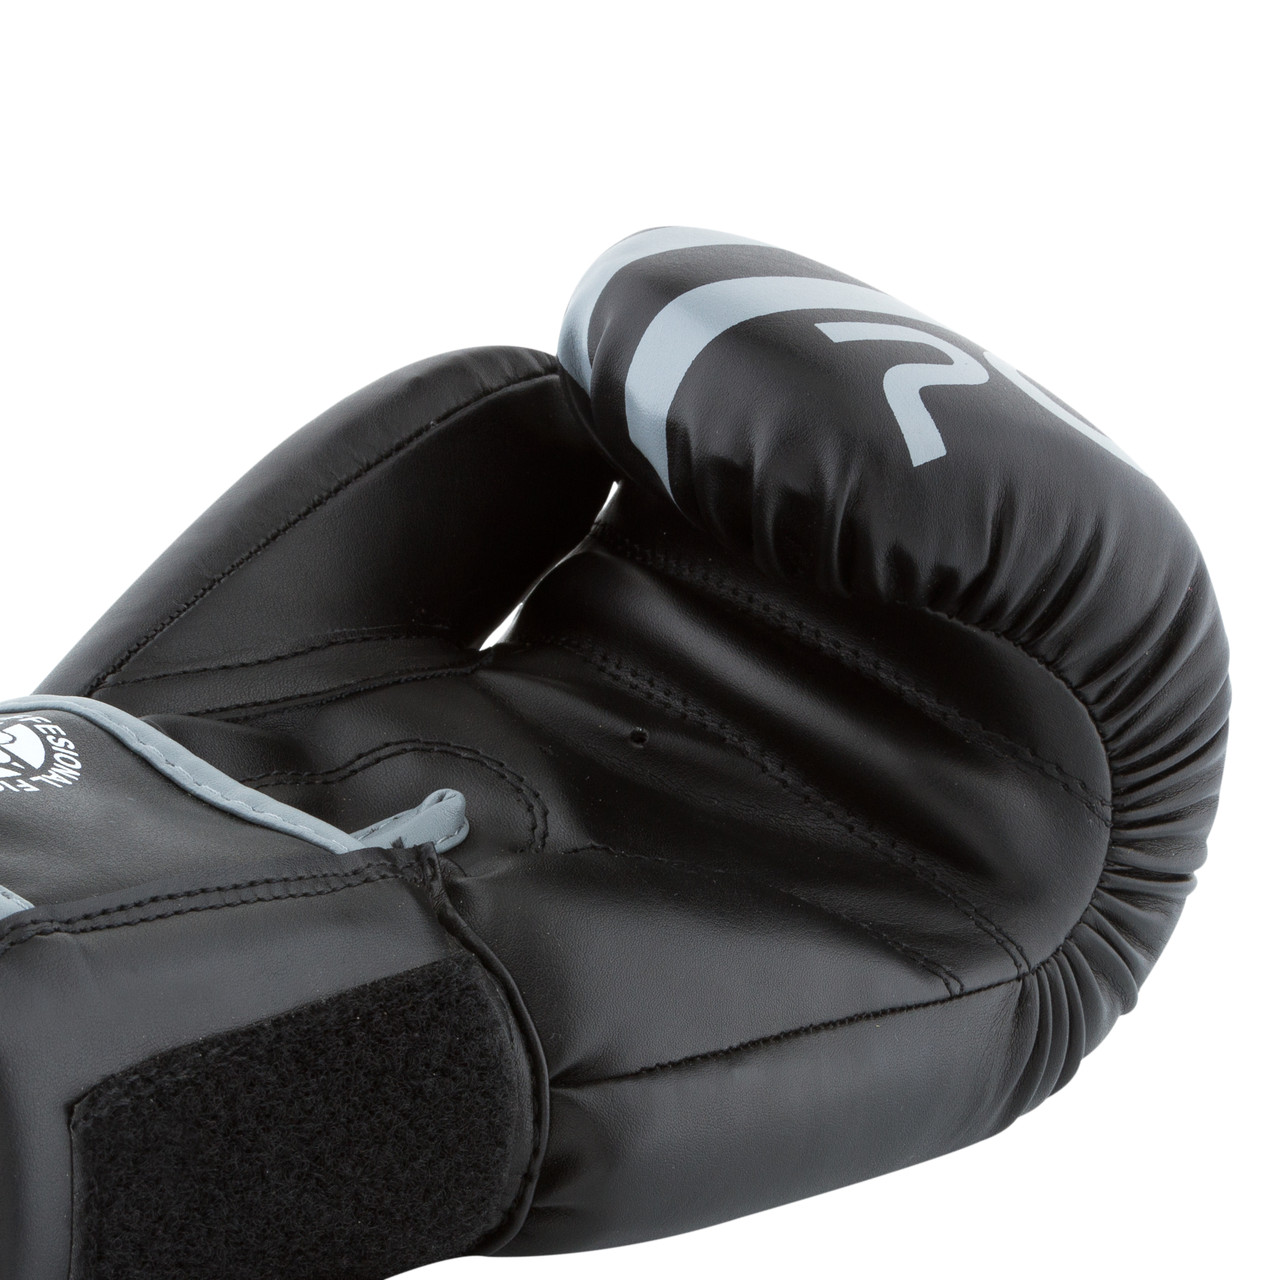 Боксерські рукавички PowerPlay 3010 чорно-сірі 8 унцій